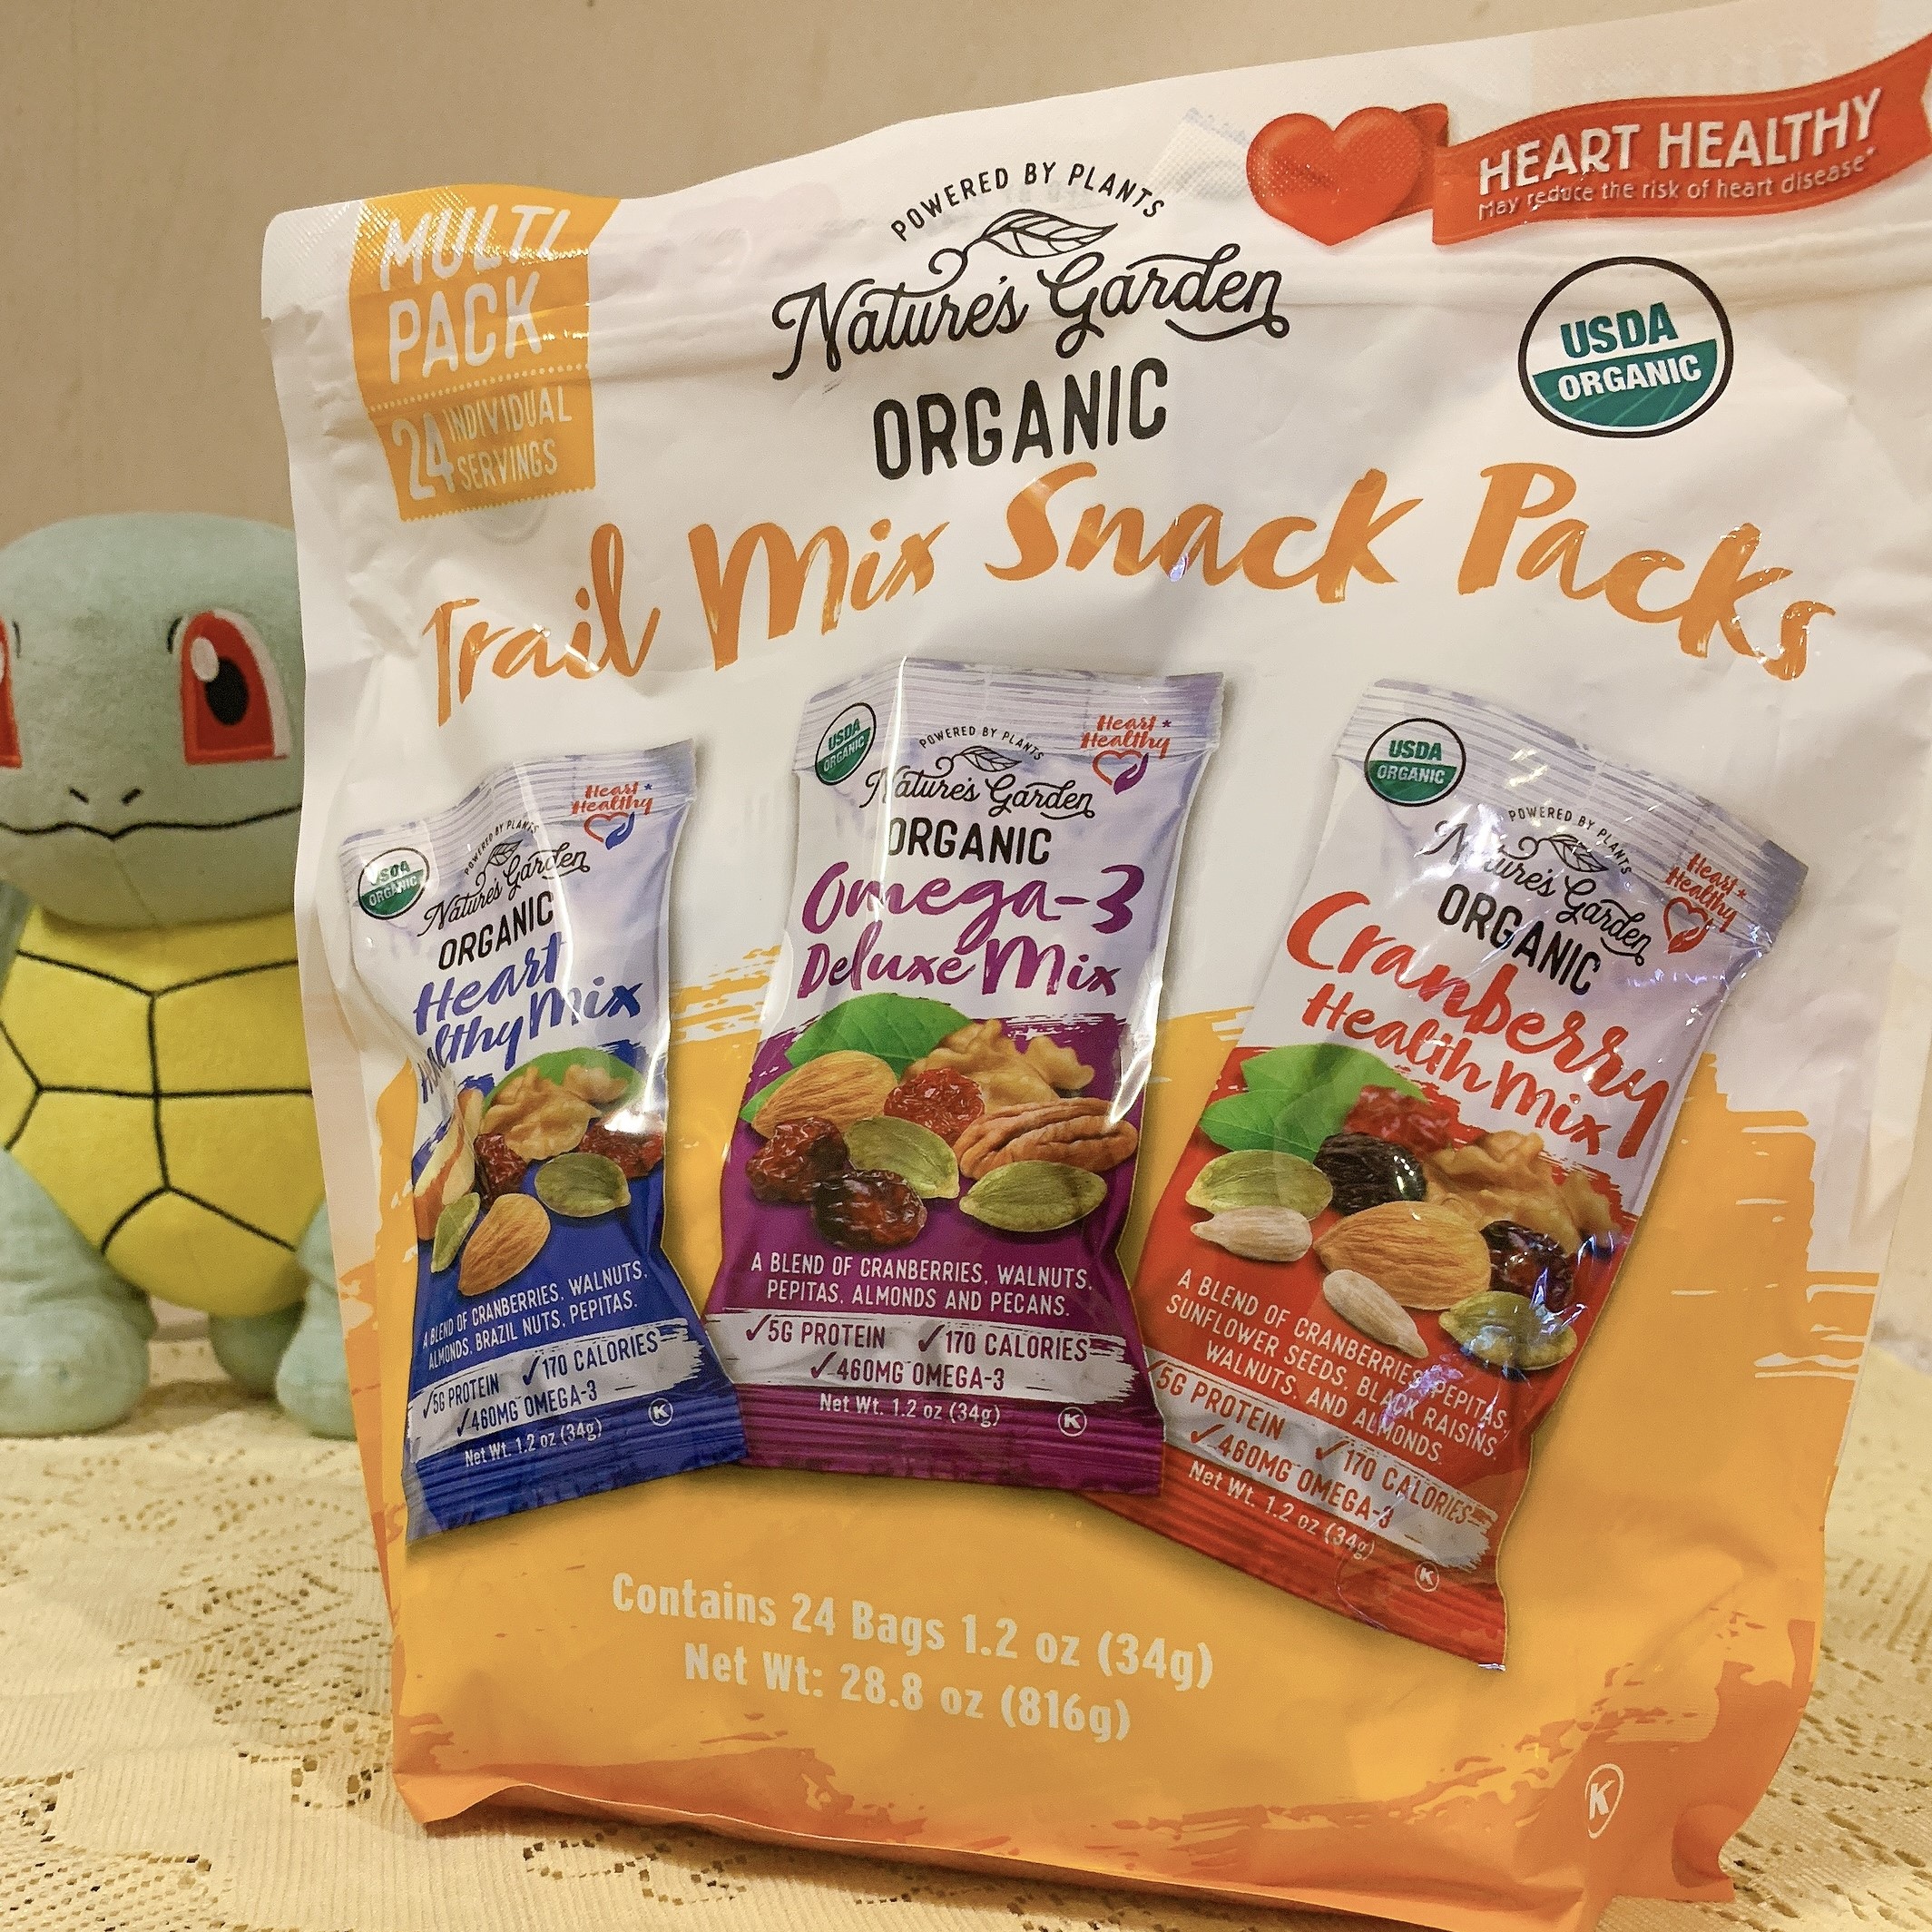 [HÀNG MỸ] Hạt hỗn hợp Nature's Garden Organic - Trail Mix Snack Packs